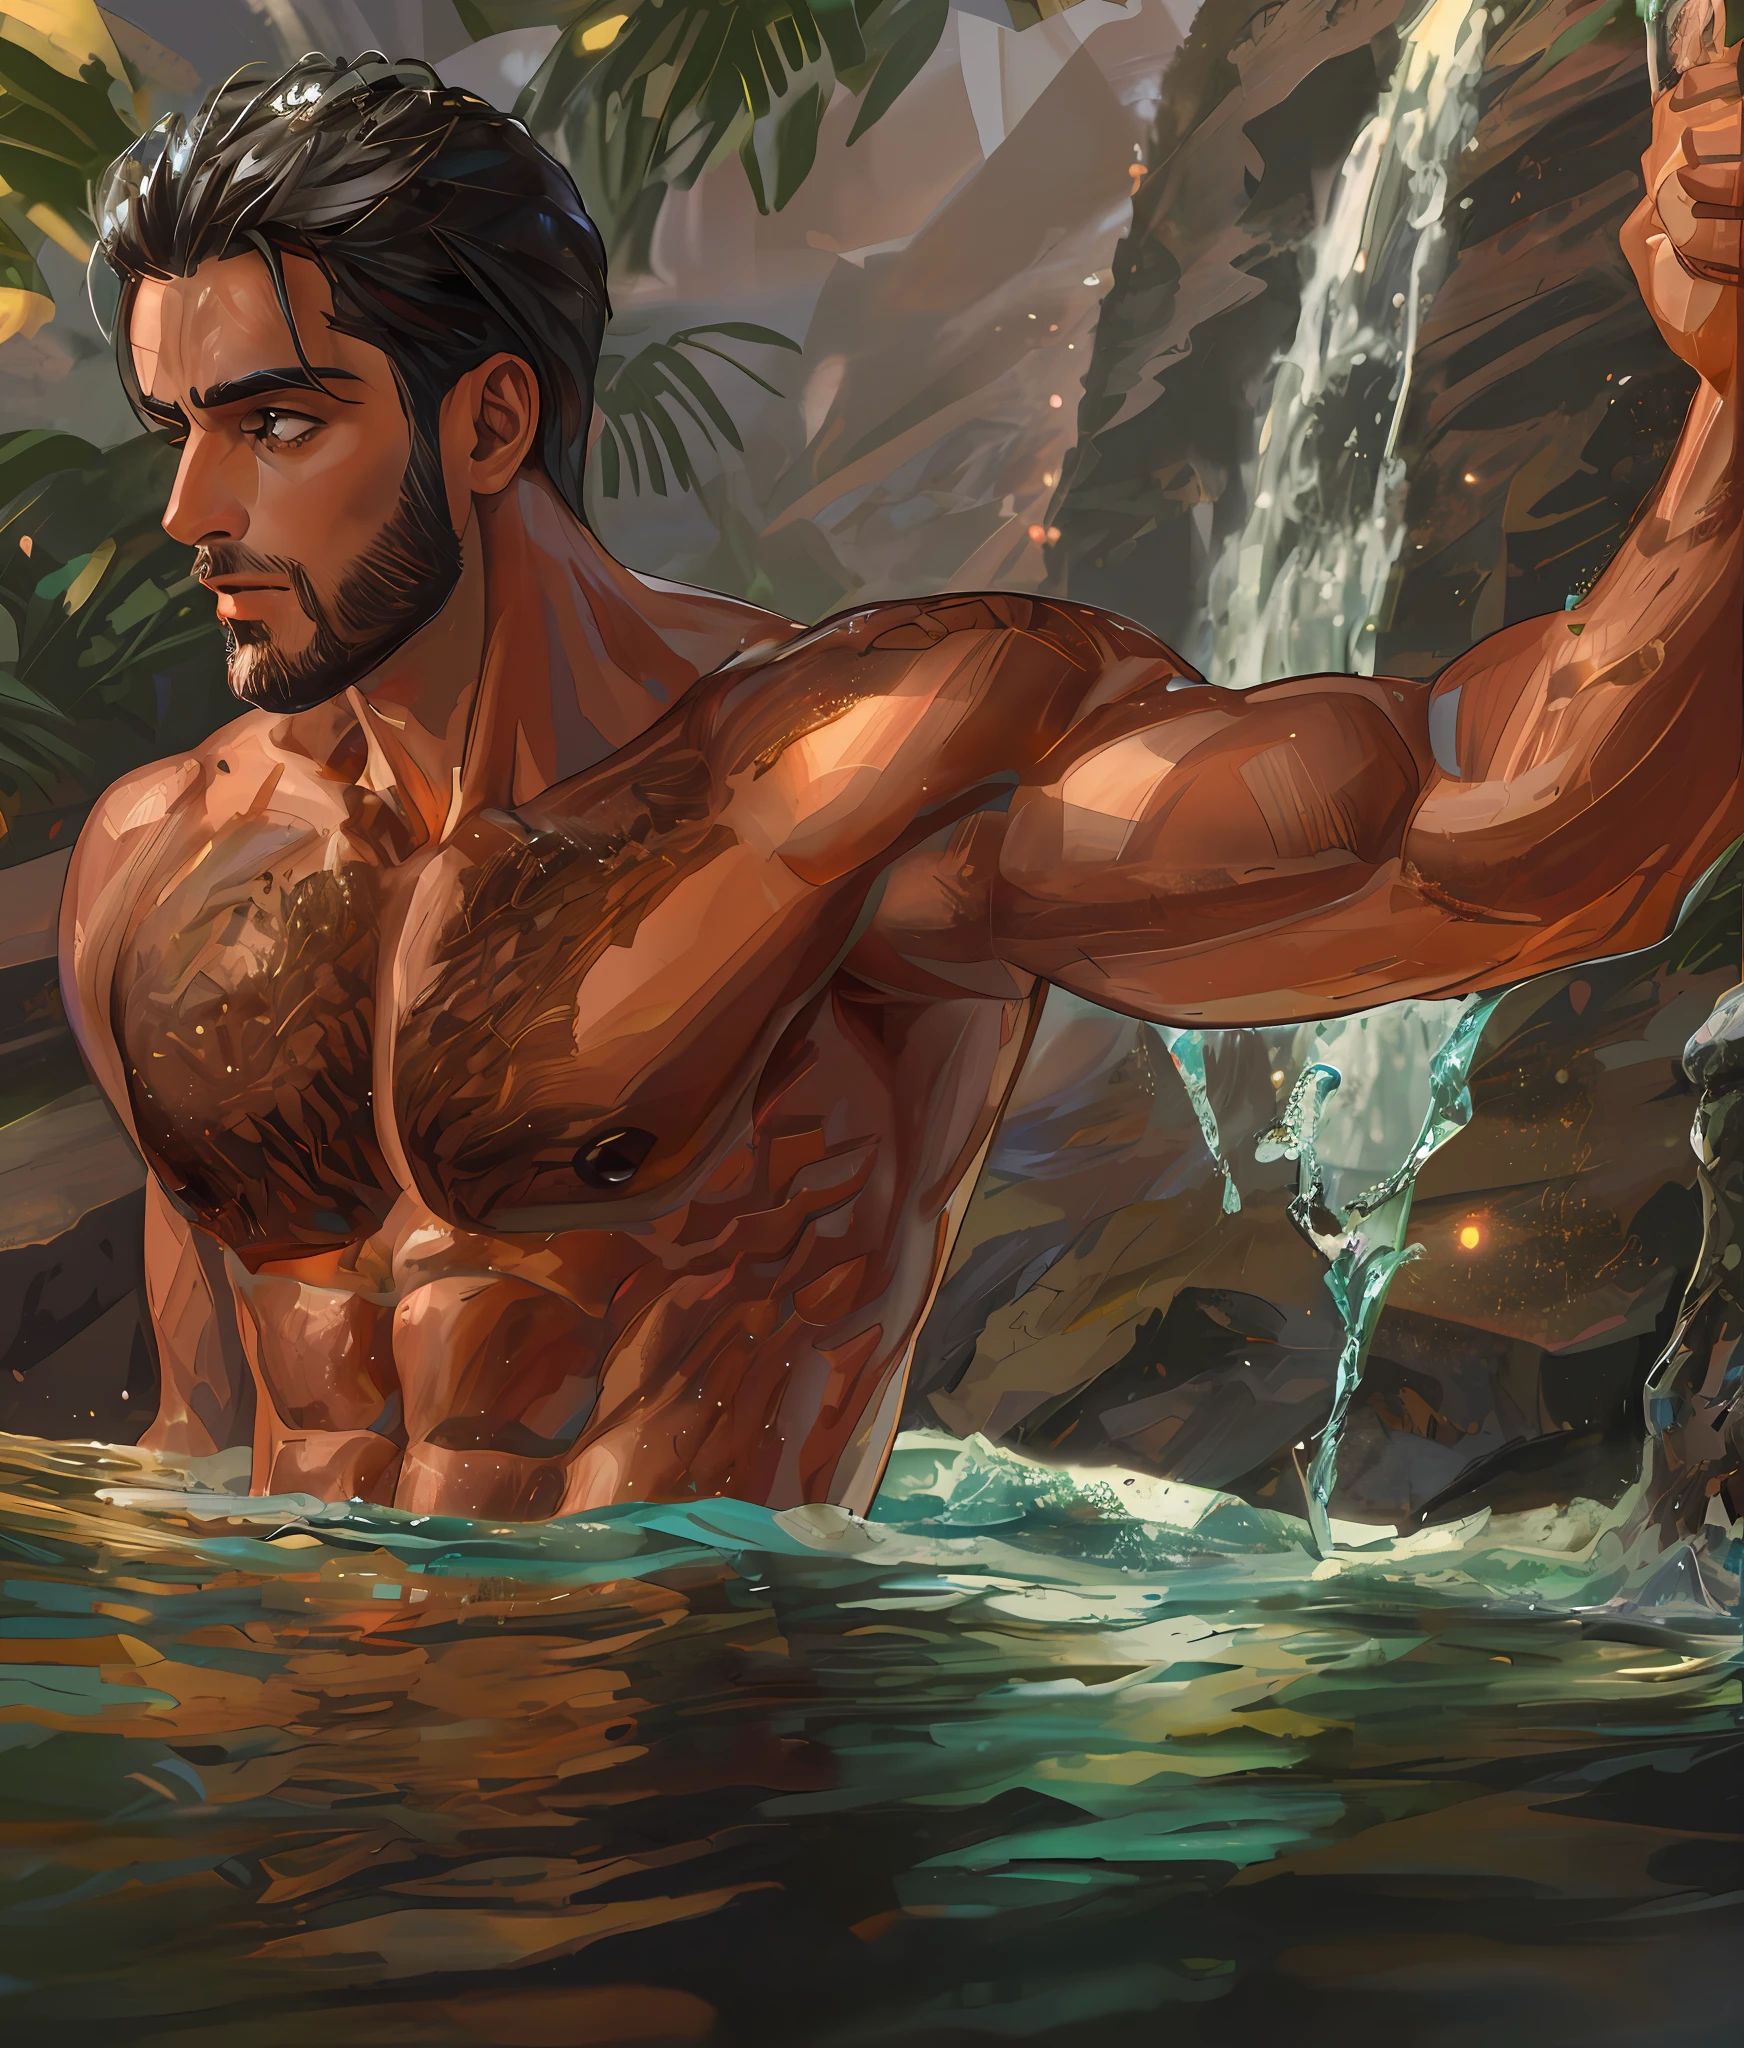 滝の水の中に立っている男性がいます, 強い男性的な特徴, 男性モデル, 魅力的な男性, 2人の魅力的な筋肉質の男性, 濡れた毛むくじゃらの体, 魅力的なボディ, 筋肉質の男性, 彫りの深い筋肉, 誇張された筋肉体格, 薄く日焼けした肌を持つスリムな男性, セクシーな筋肉ボディ, 美しい美しい体, 監督: アダム・ダリオ・キール, お辞儀をした筋肉;